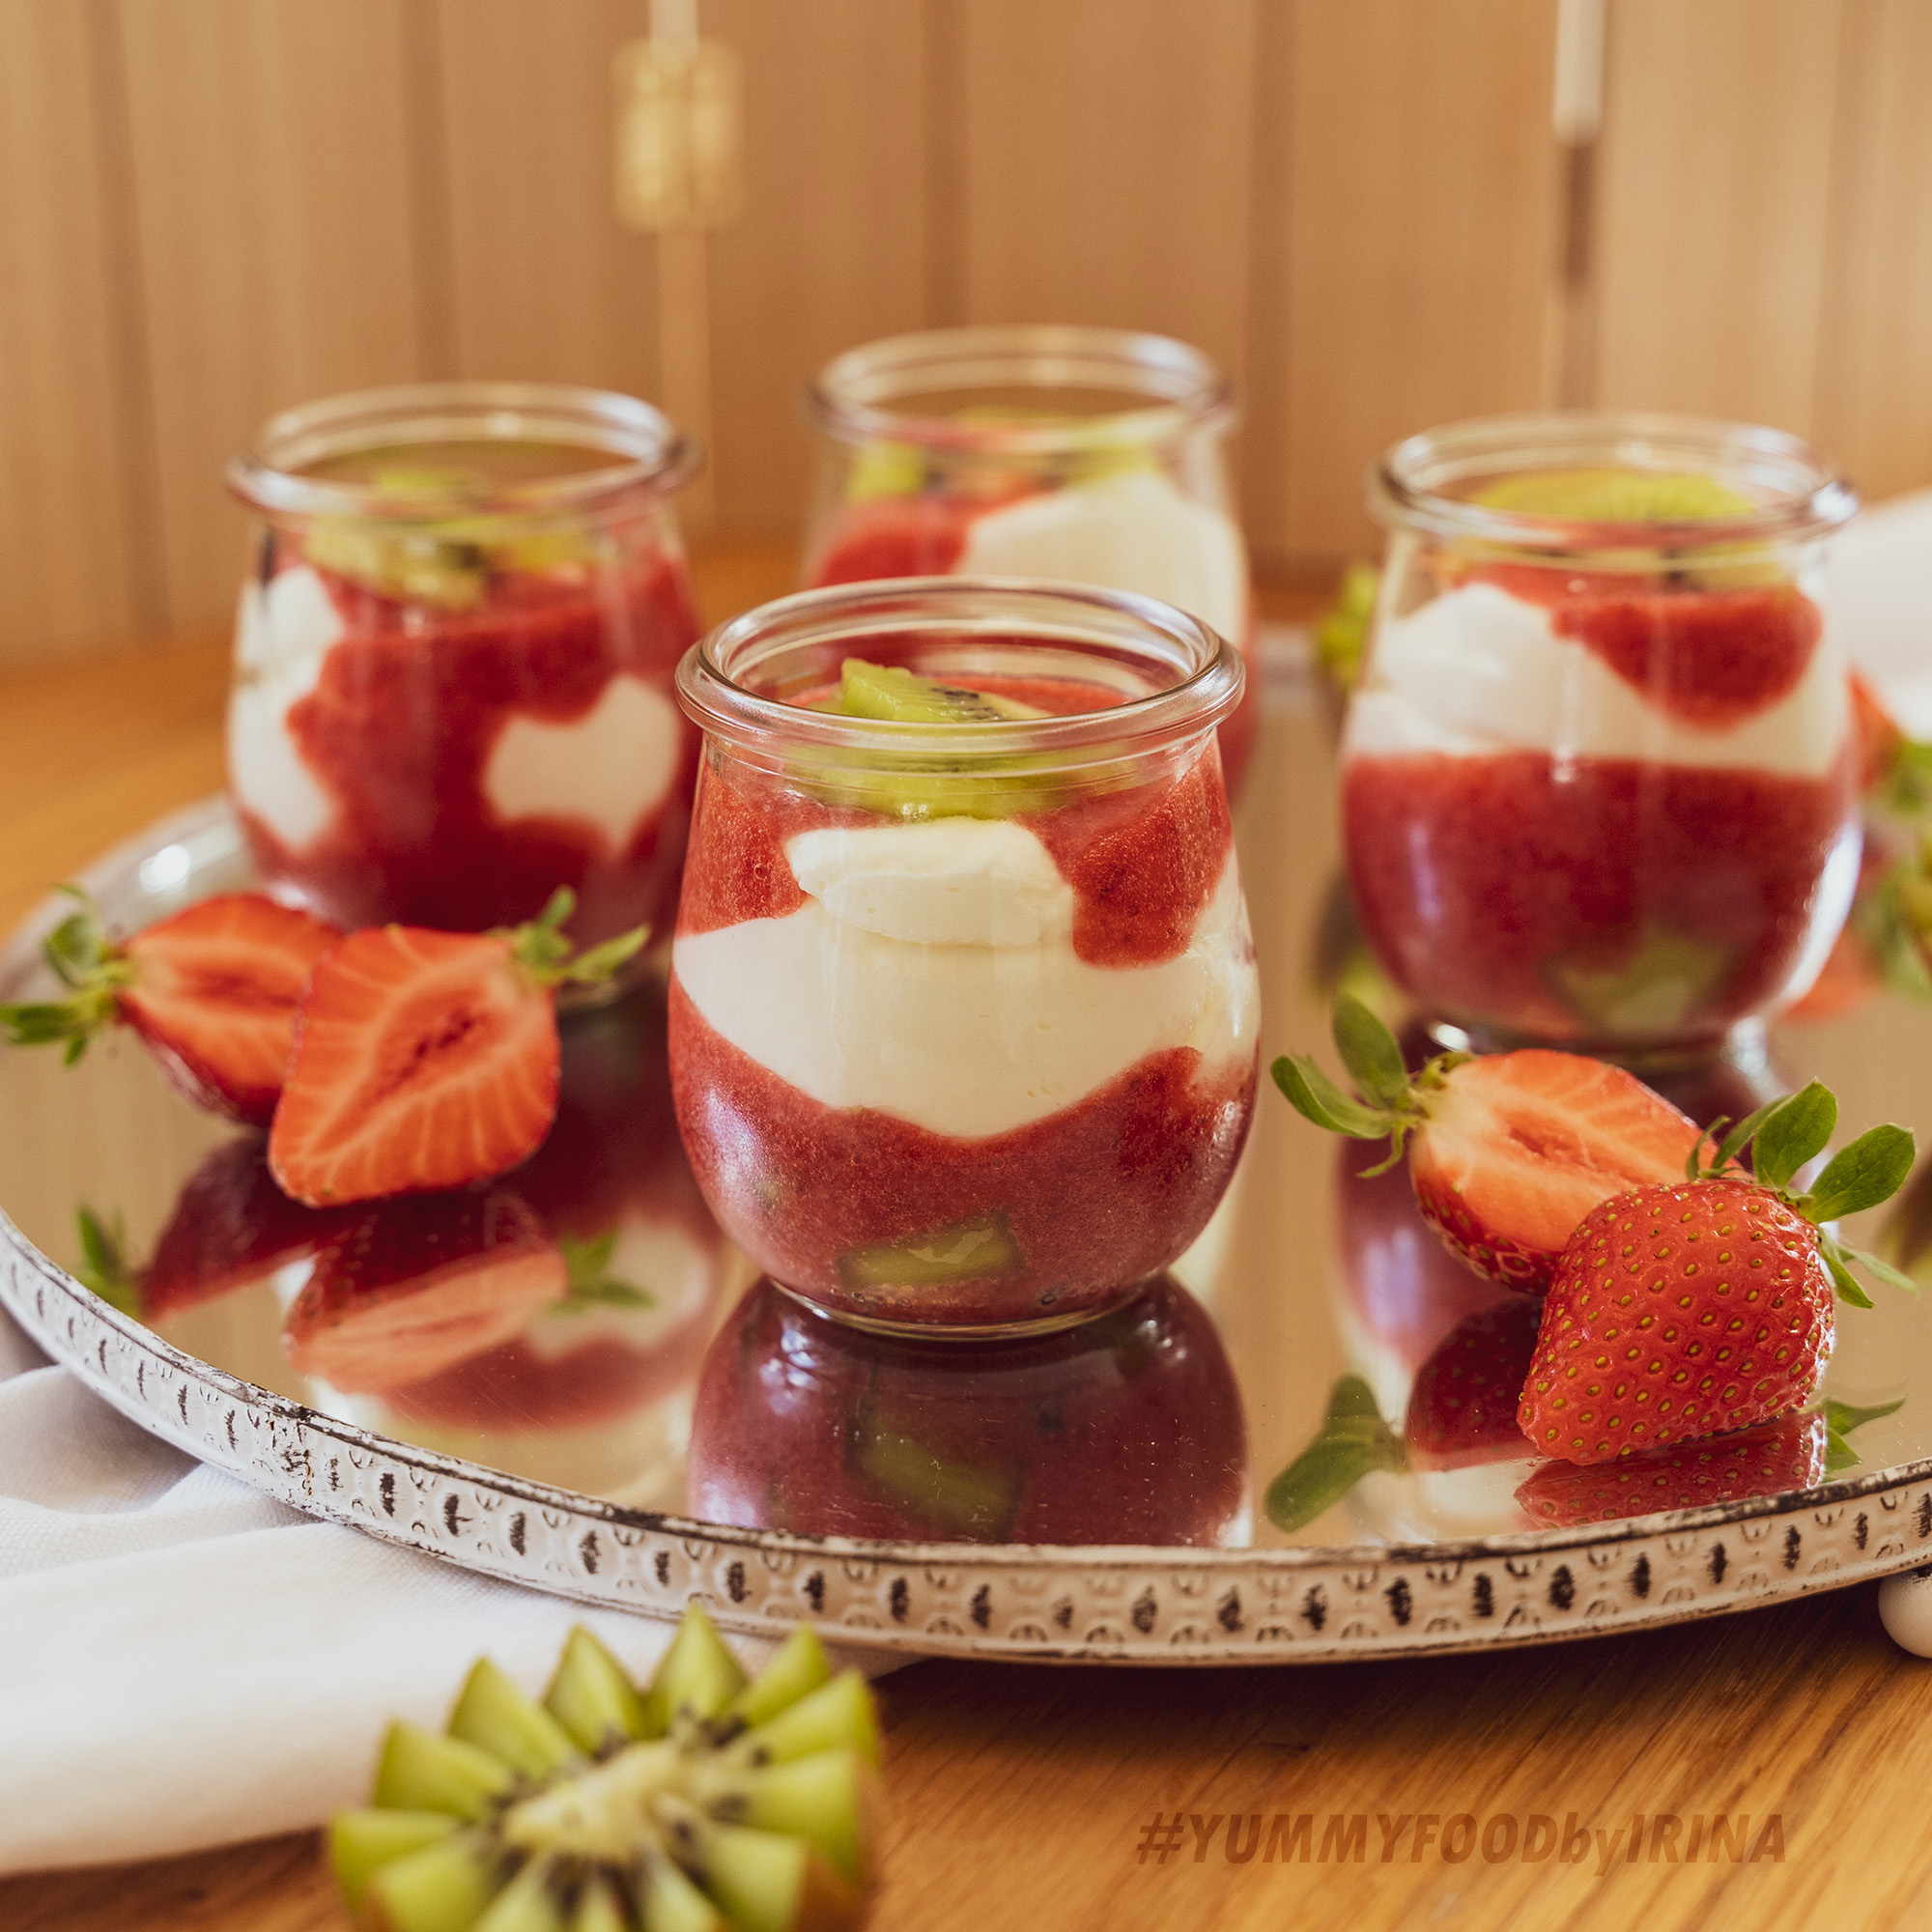 Erdbeer-Kiwi-Joghurtdessert - YUMMYFOODbyirina